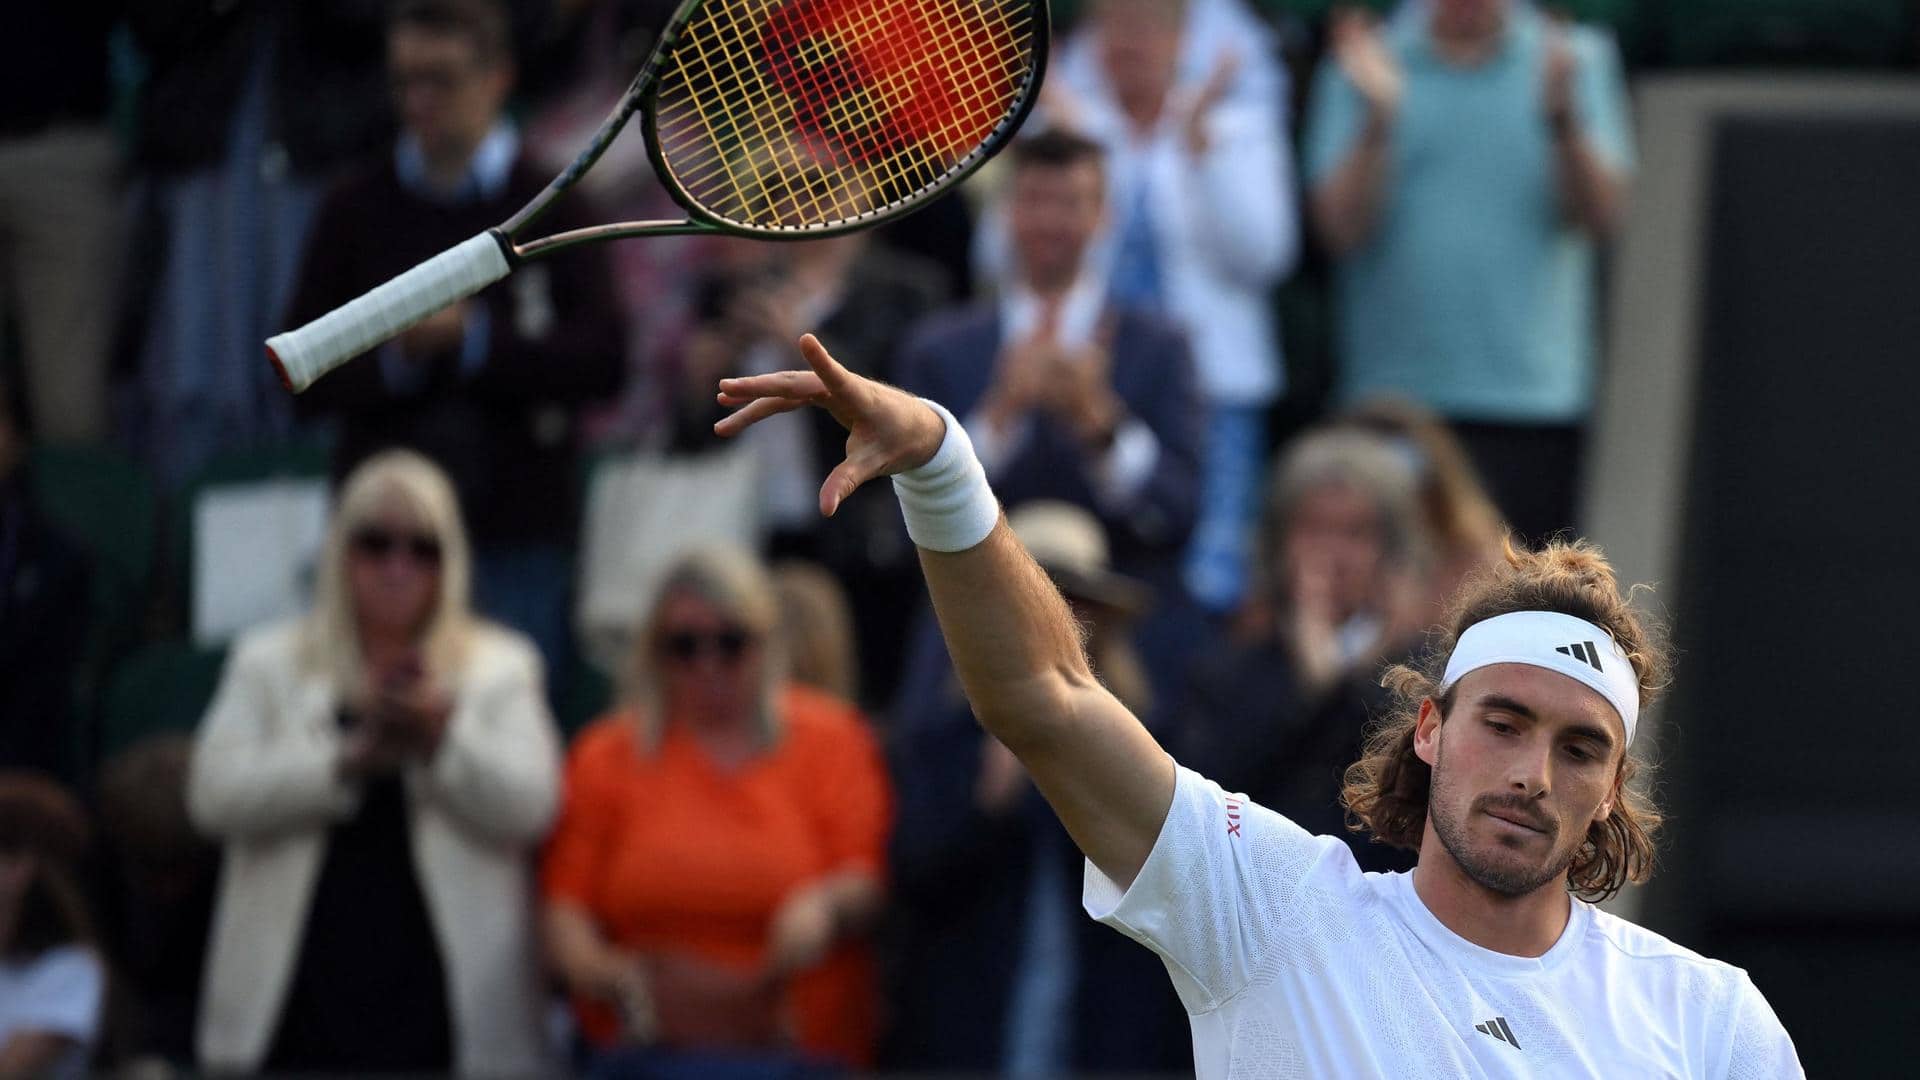 2023 Wimbledon, Stefanos Tsitsipas seals dramatic first-round win: Key stats